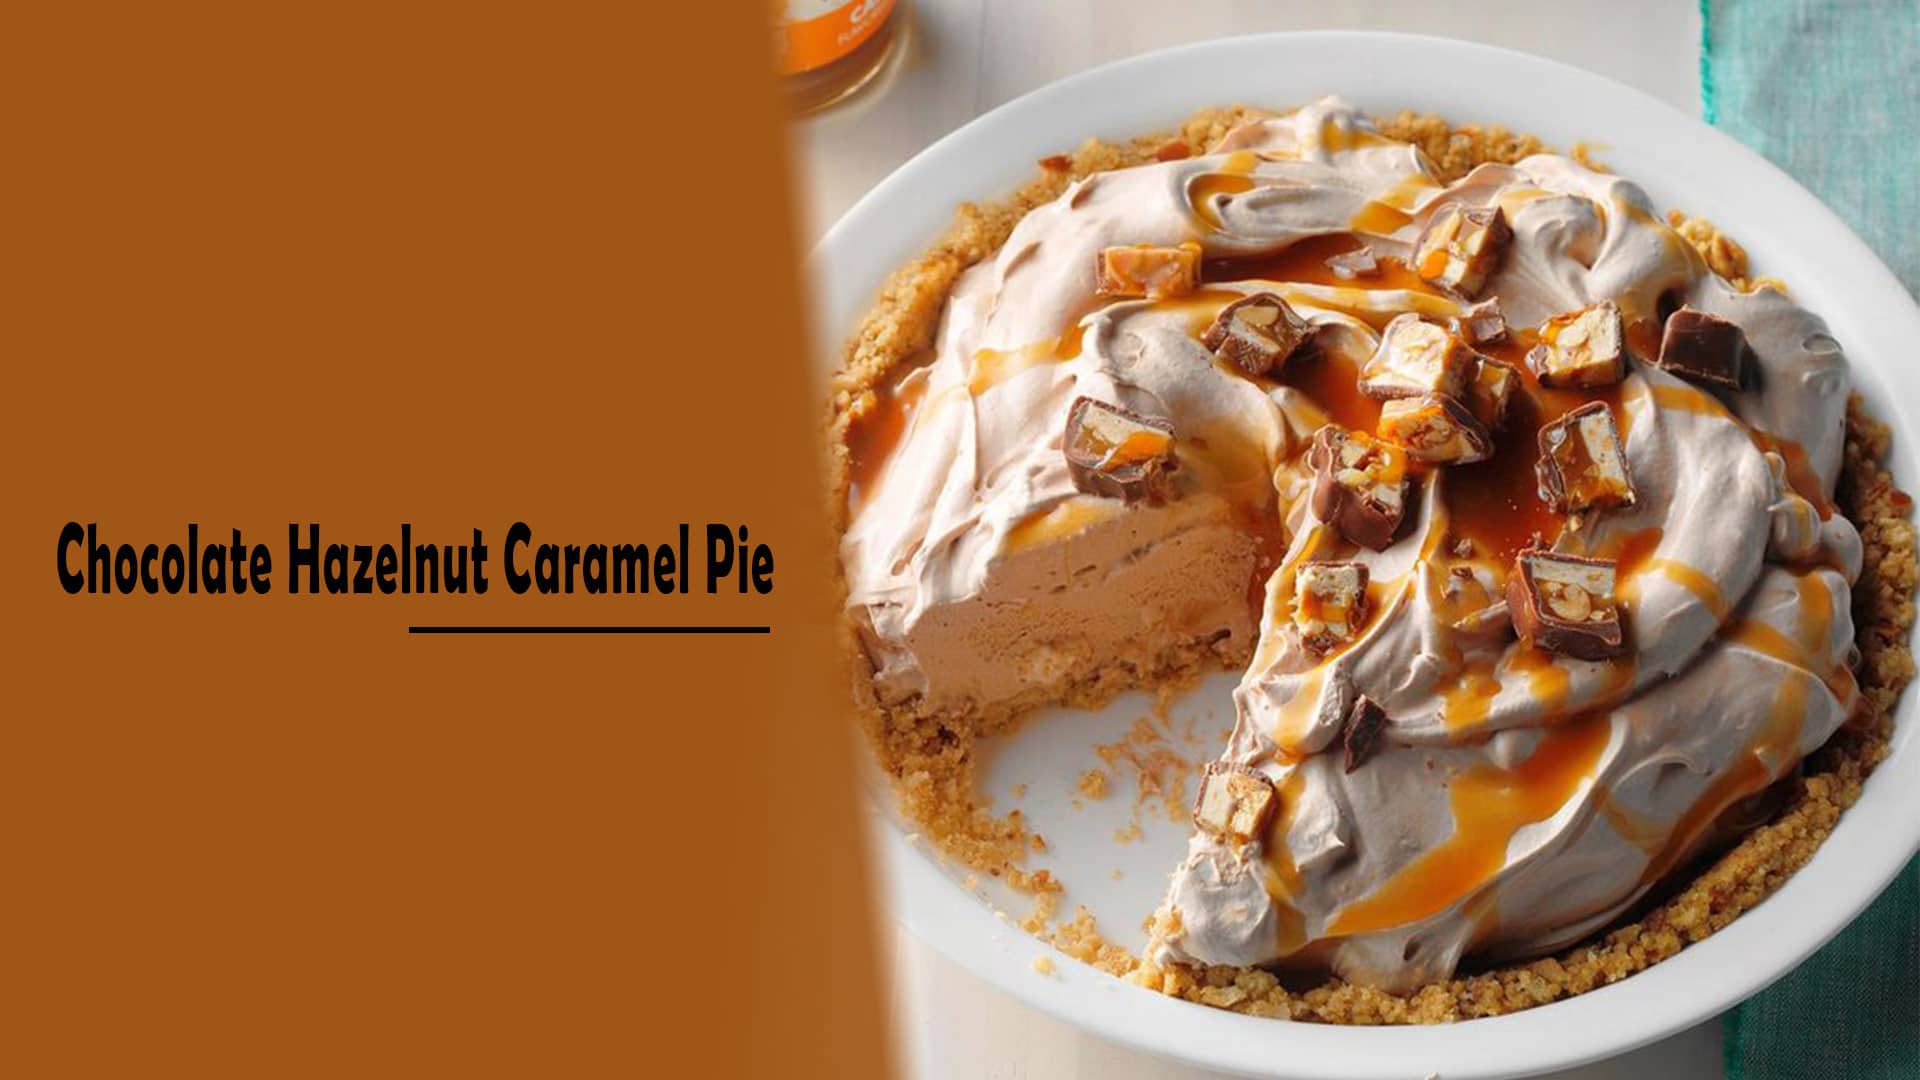 Chocolate Hazelnut Caramel Pie